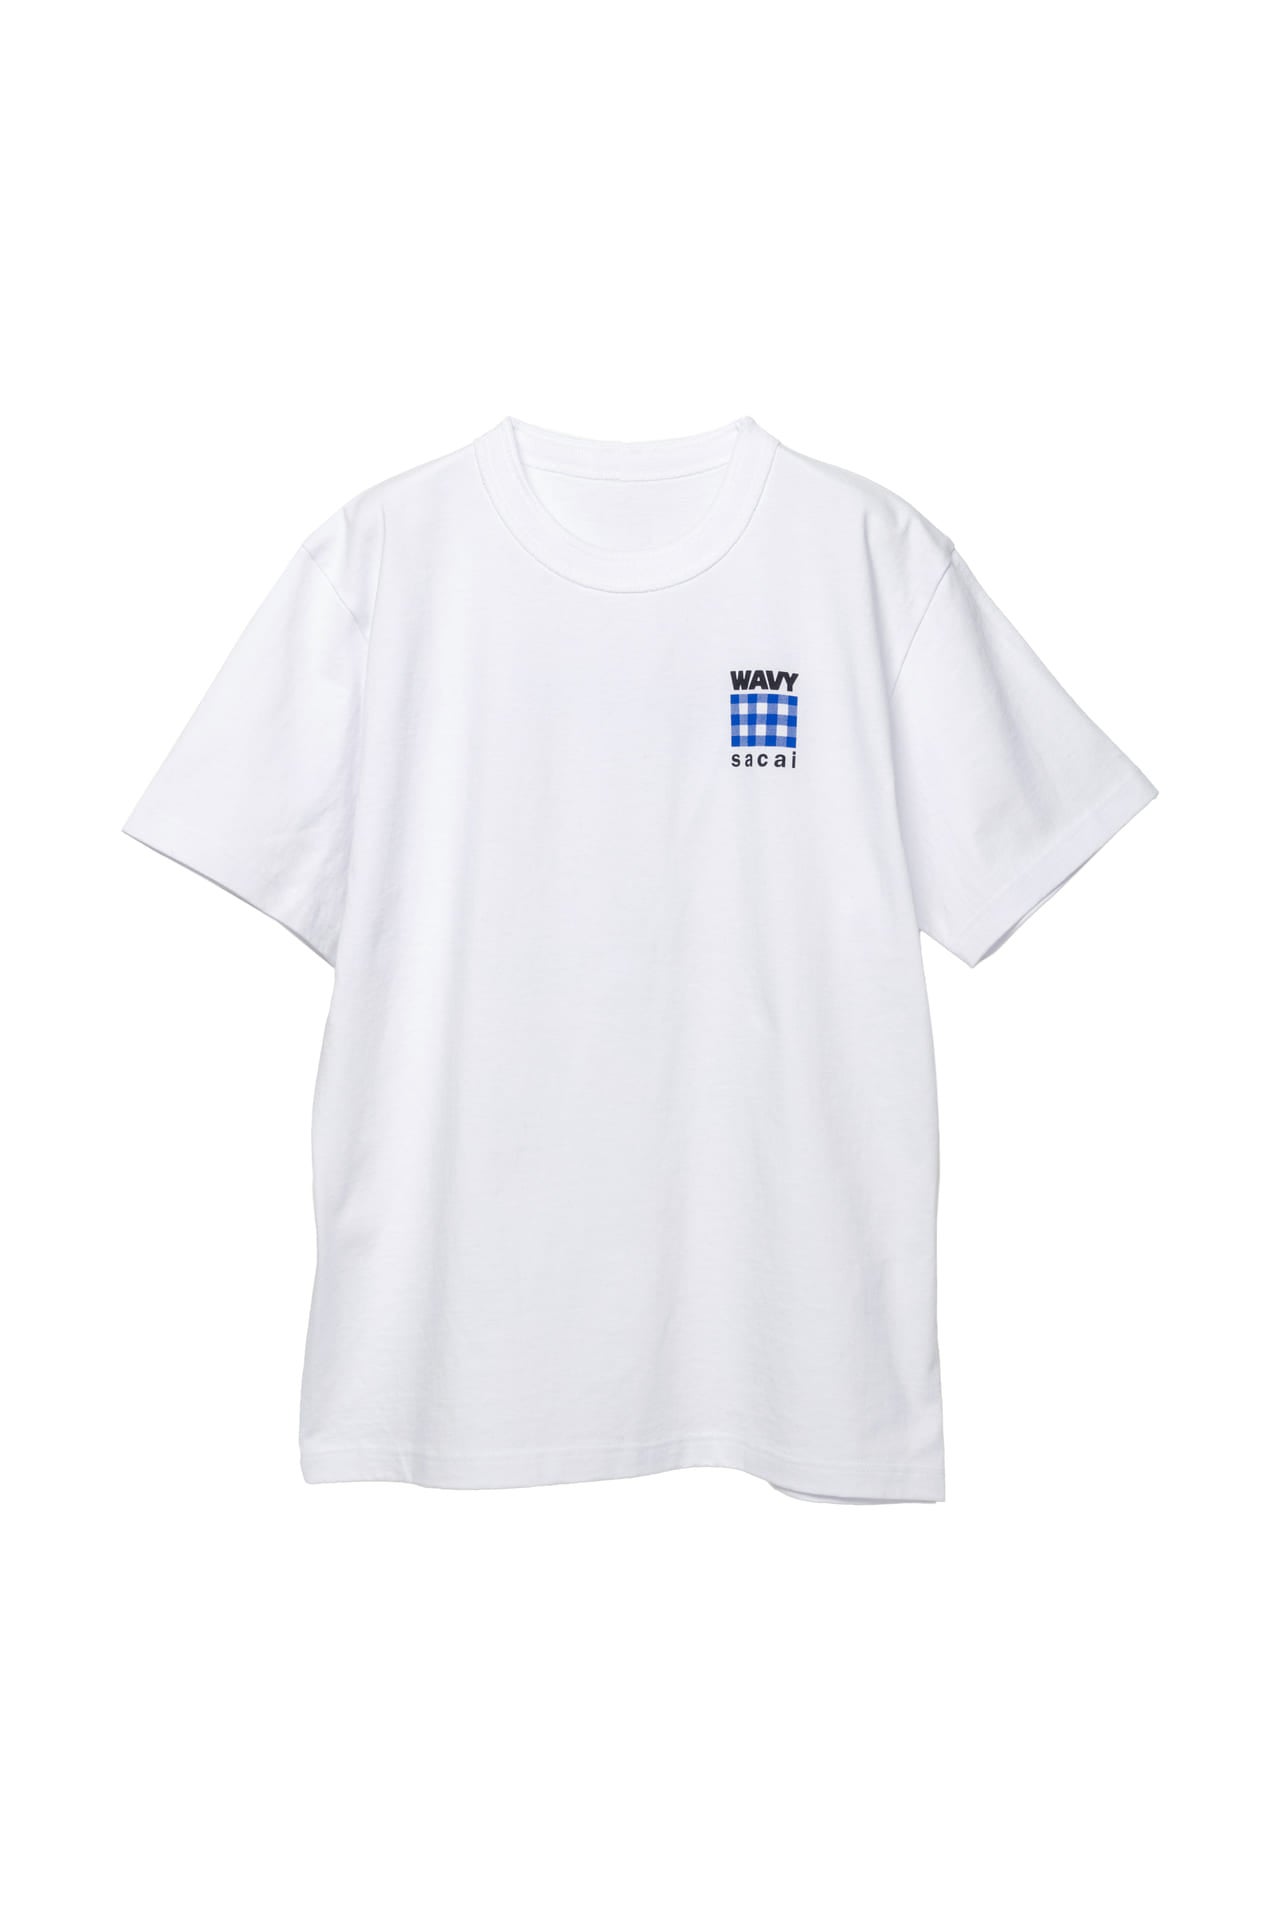 Sacai GASTRO 価格:T シャツ ¥16,500 カラー:ブラック、ホワイト